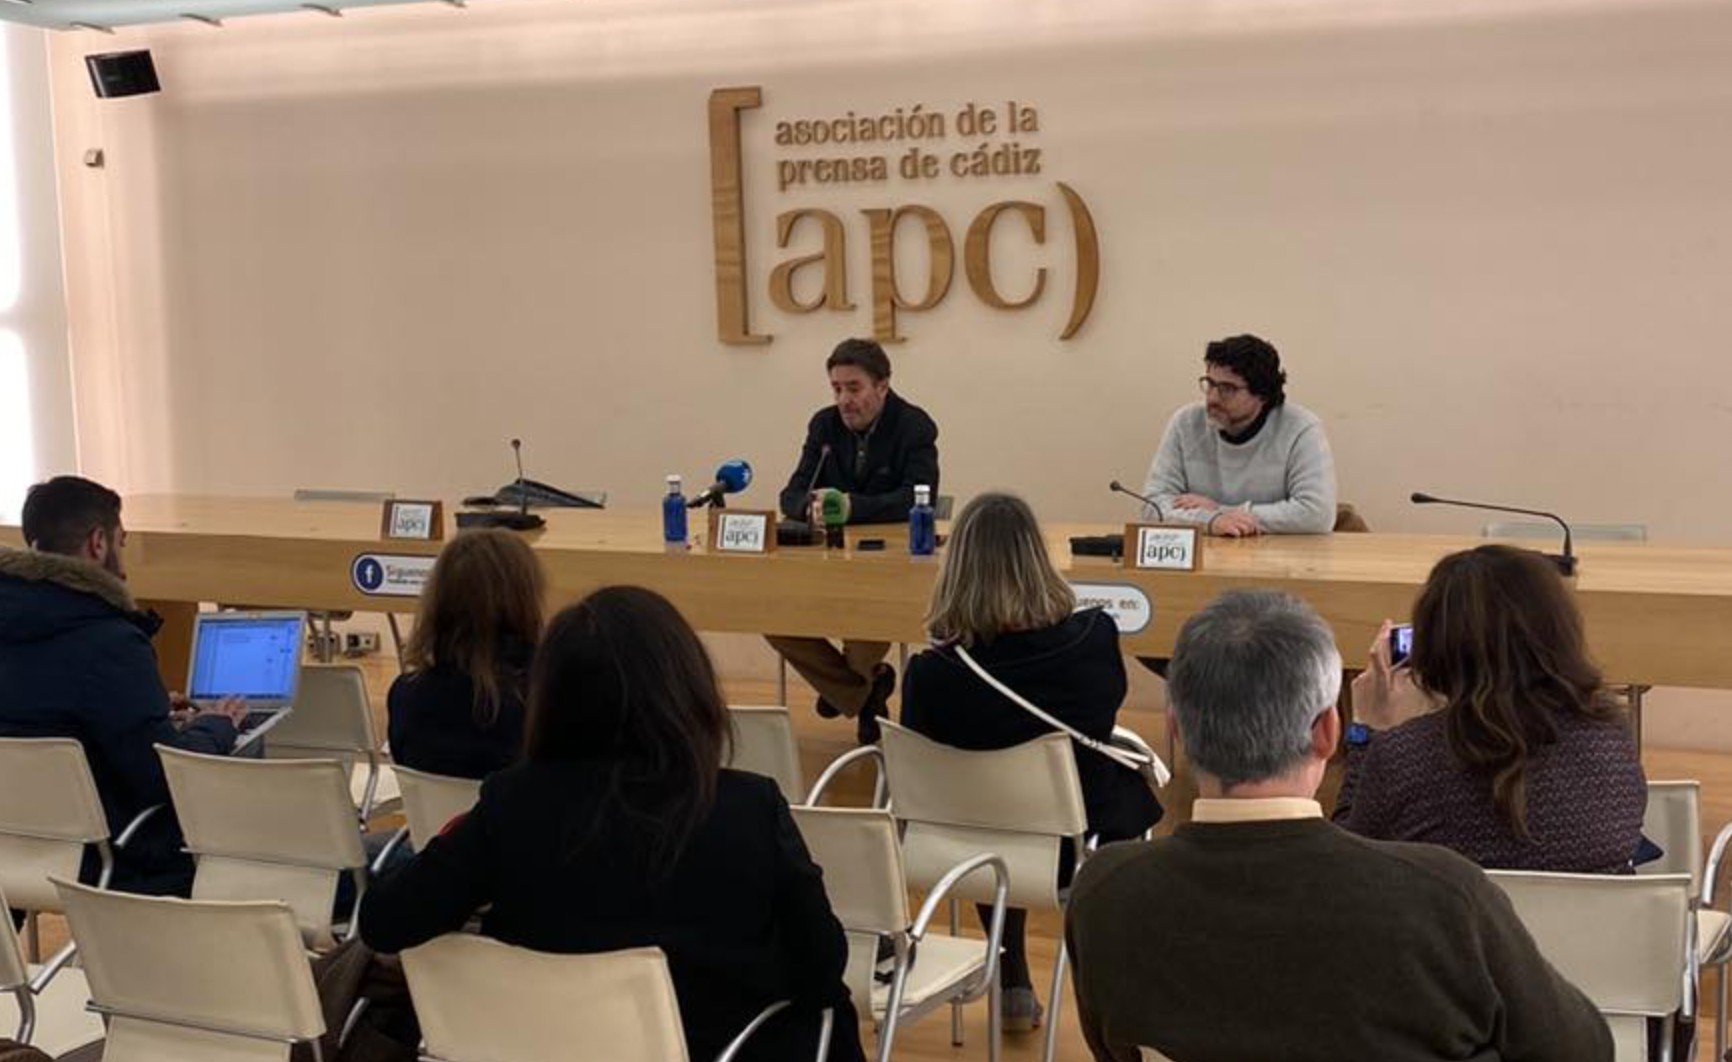 Encuentro de la Asociación de la Prensa de Cádiz con Luis García Montero.